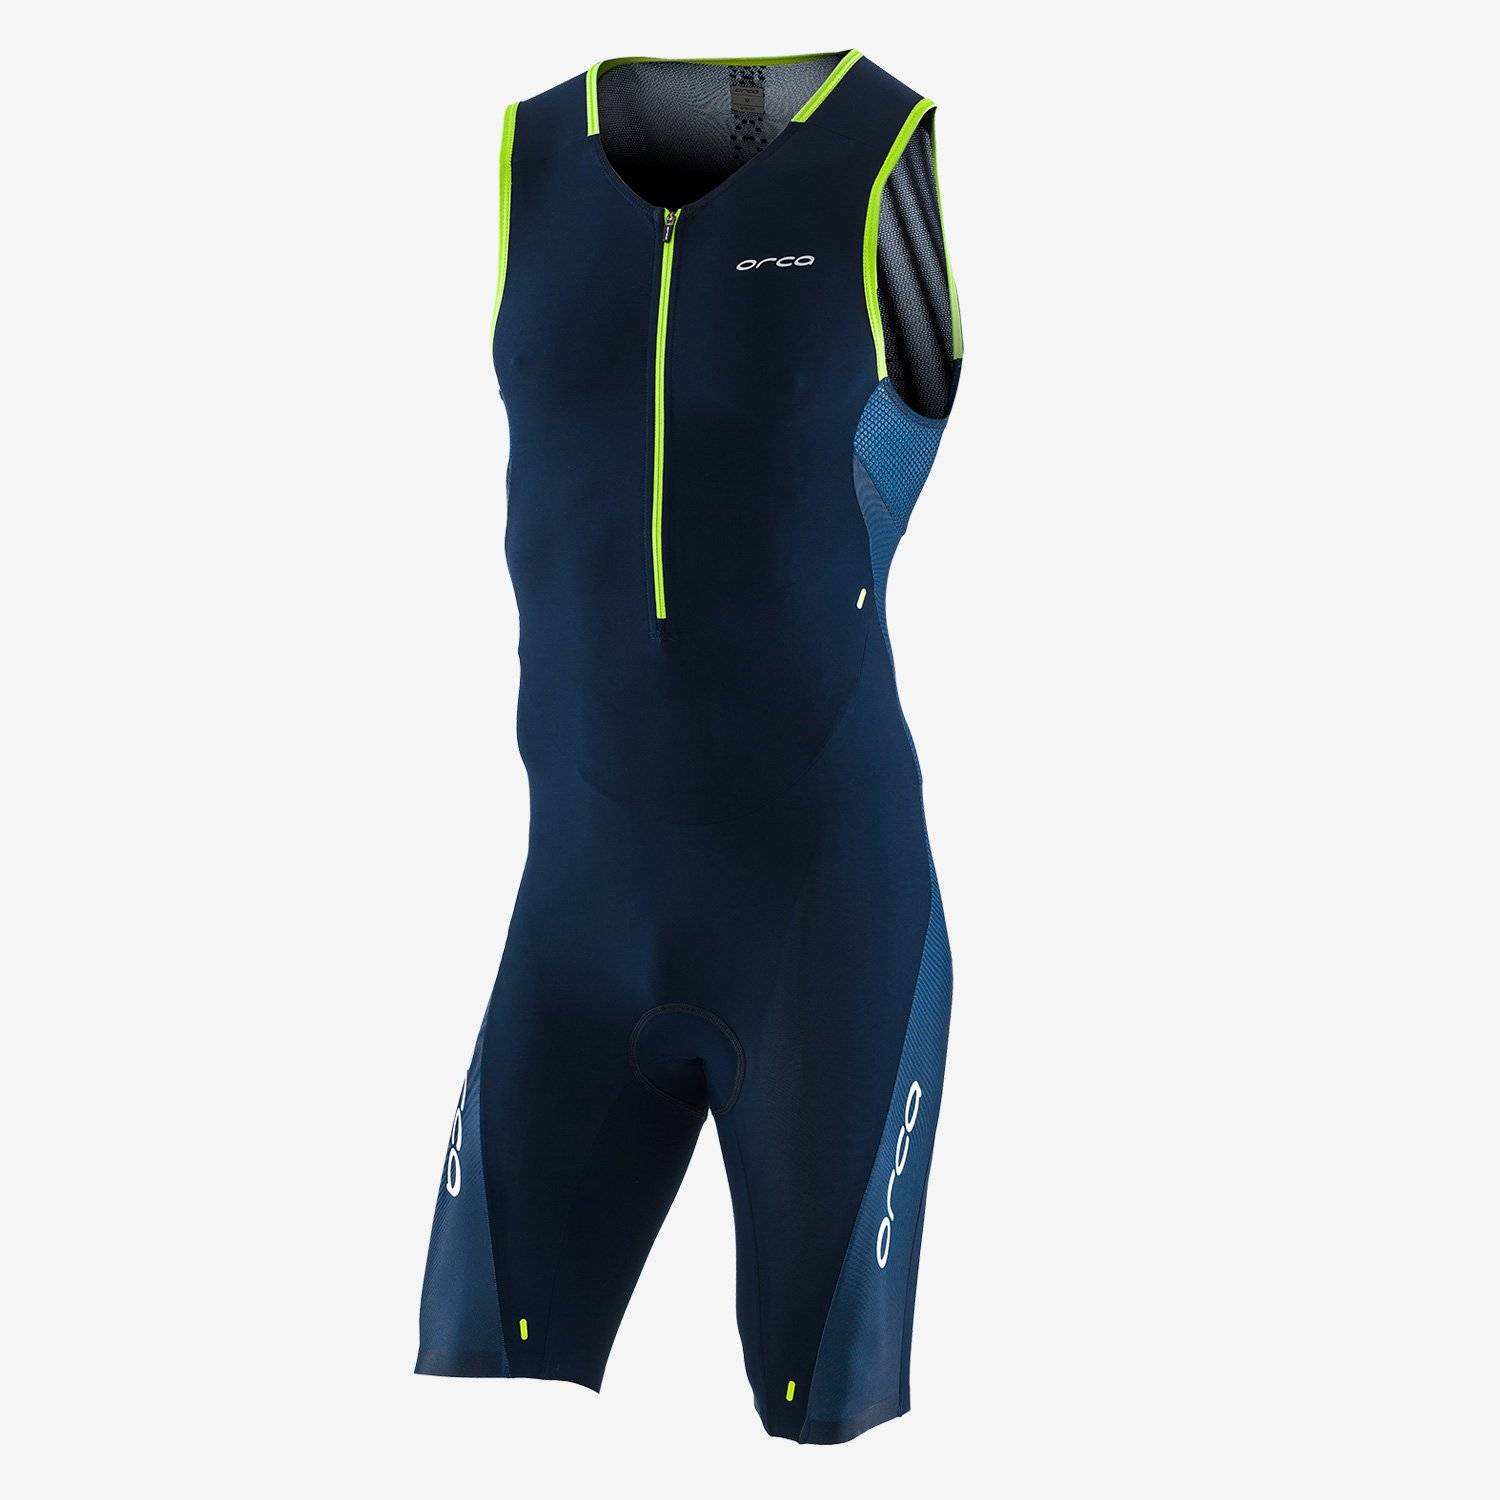 Комбинезон для триатлона Orca 226 Perform Race Suit, сине-зеленый, 2020, KP12, Вариант УТ-00198236: Размер: L, изображение  - НаВелосипеде.рф